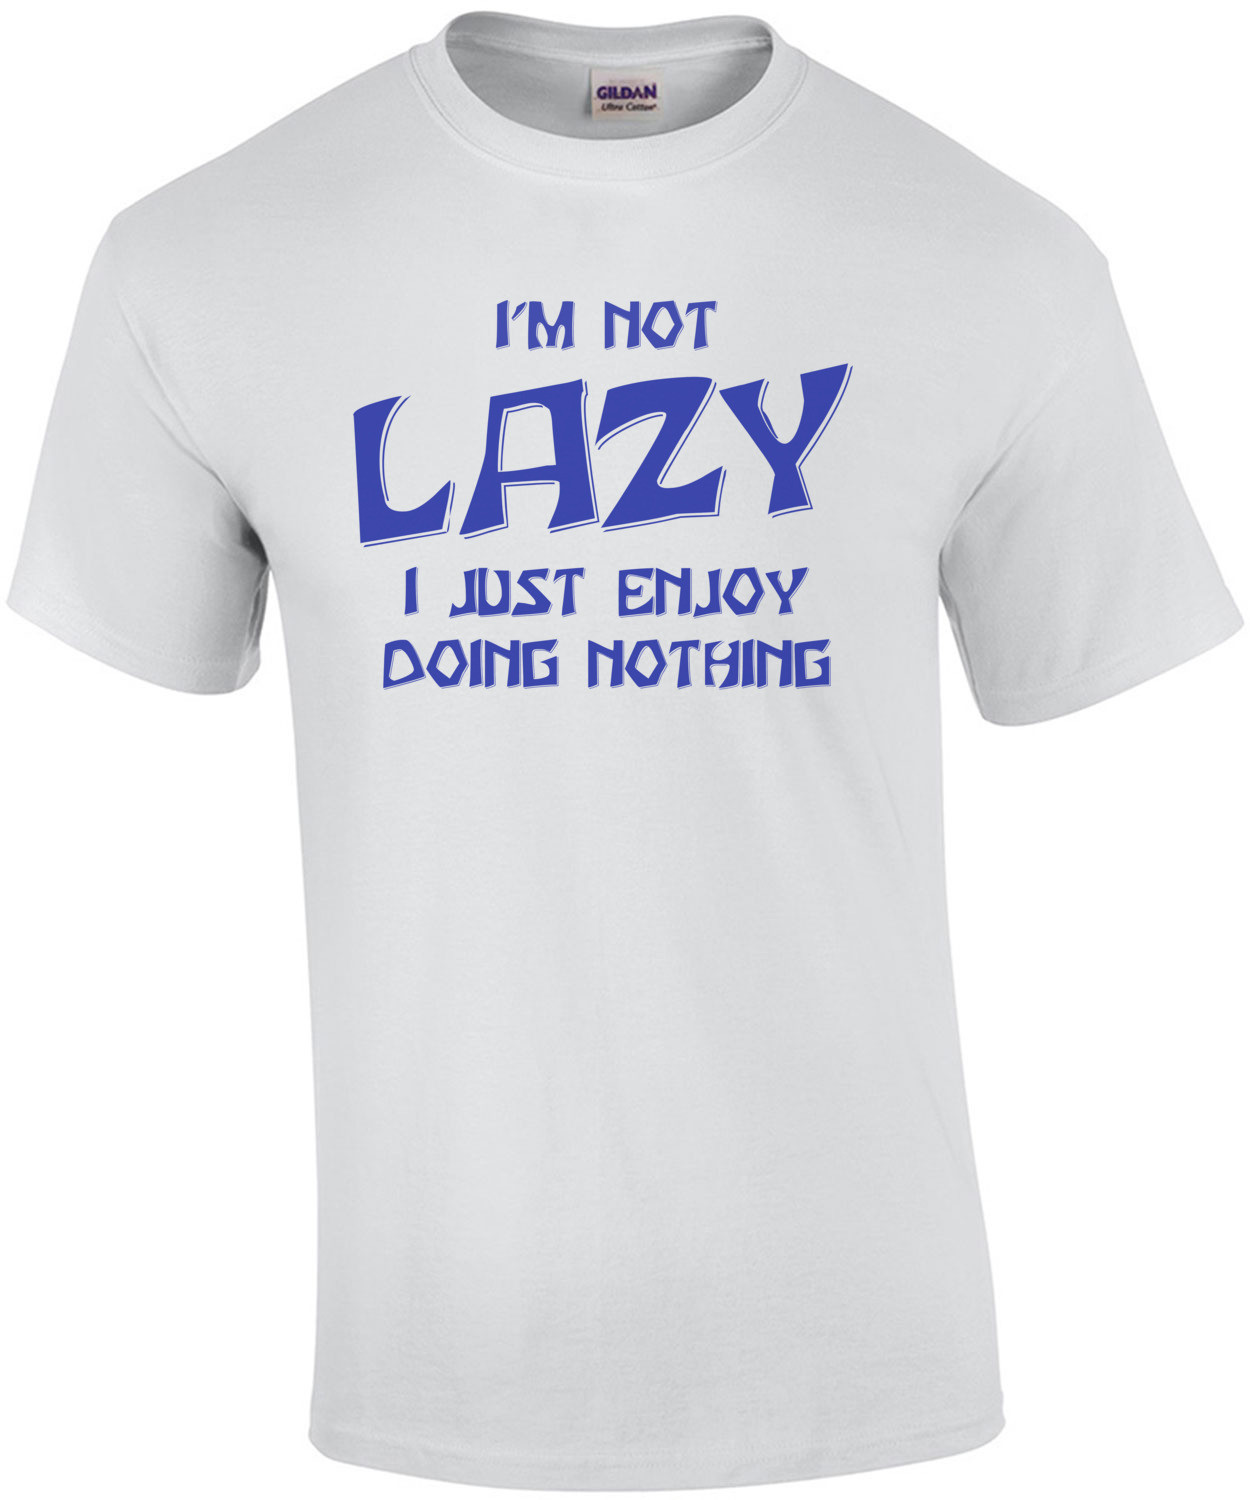 I'm Not Lazy... I Enjoy Doing Nothing!